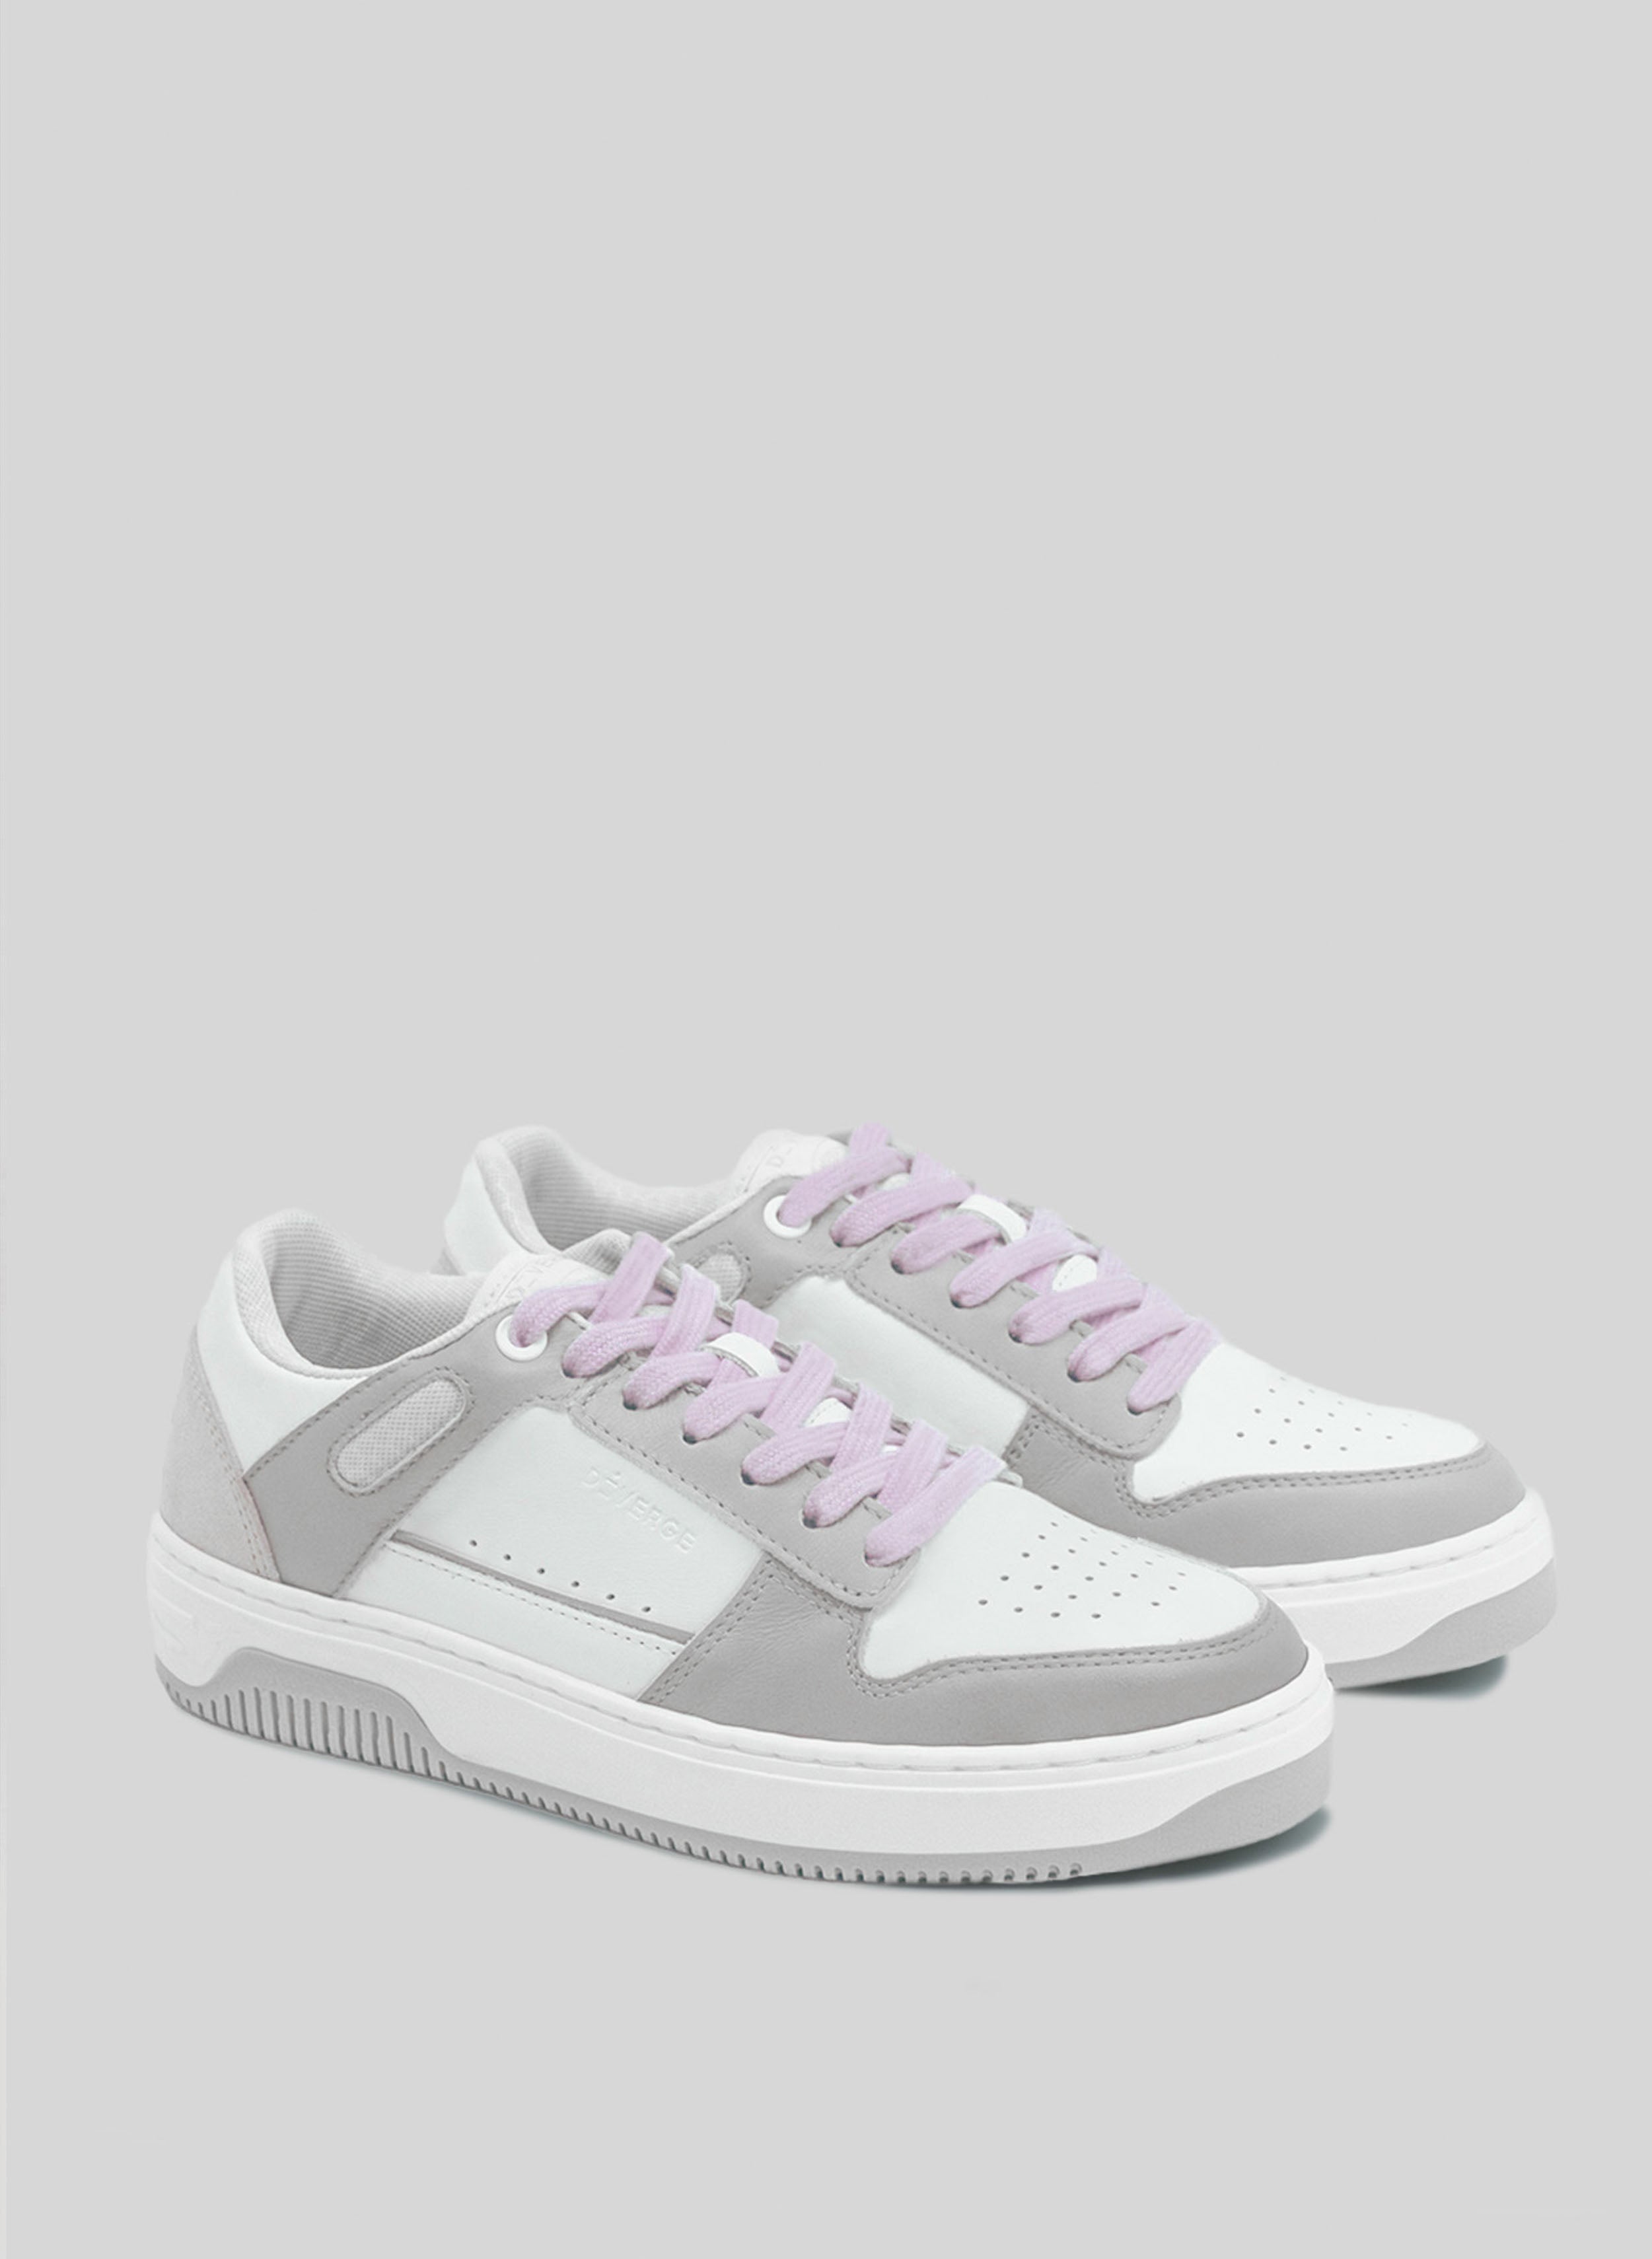 Ein weißer und grauer Sneaker mit lila Schnürsenkeln von Diverge , der durch das imagine-Projekt soziale Auswirkungen und individuelle Schuhe fördert.